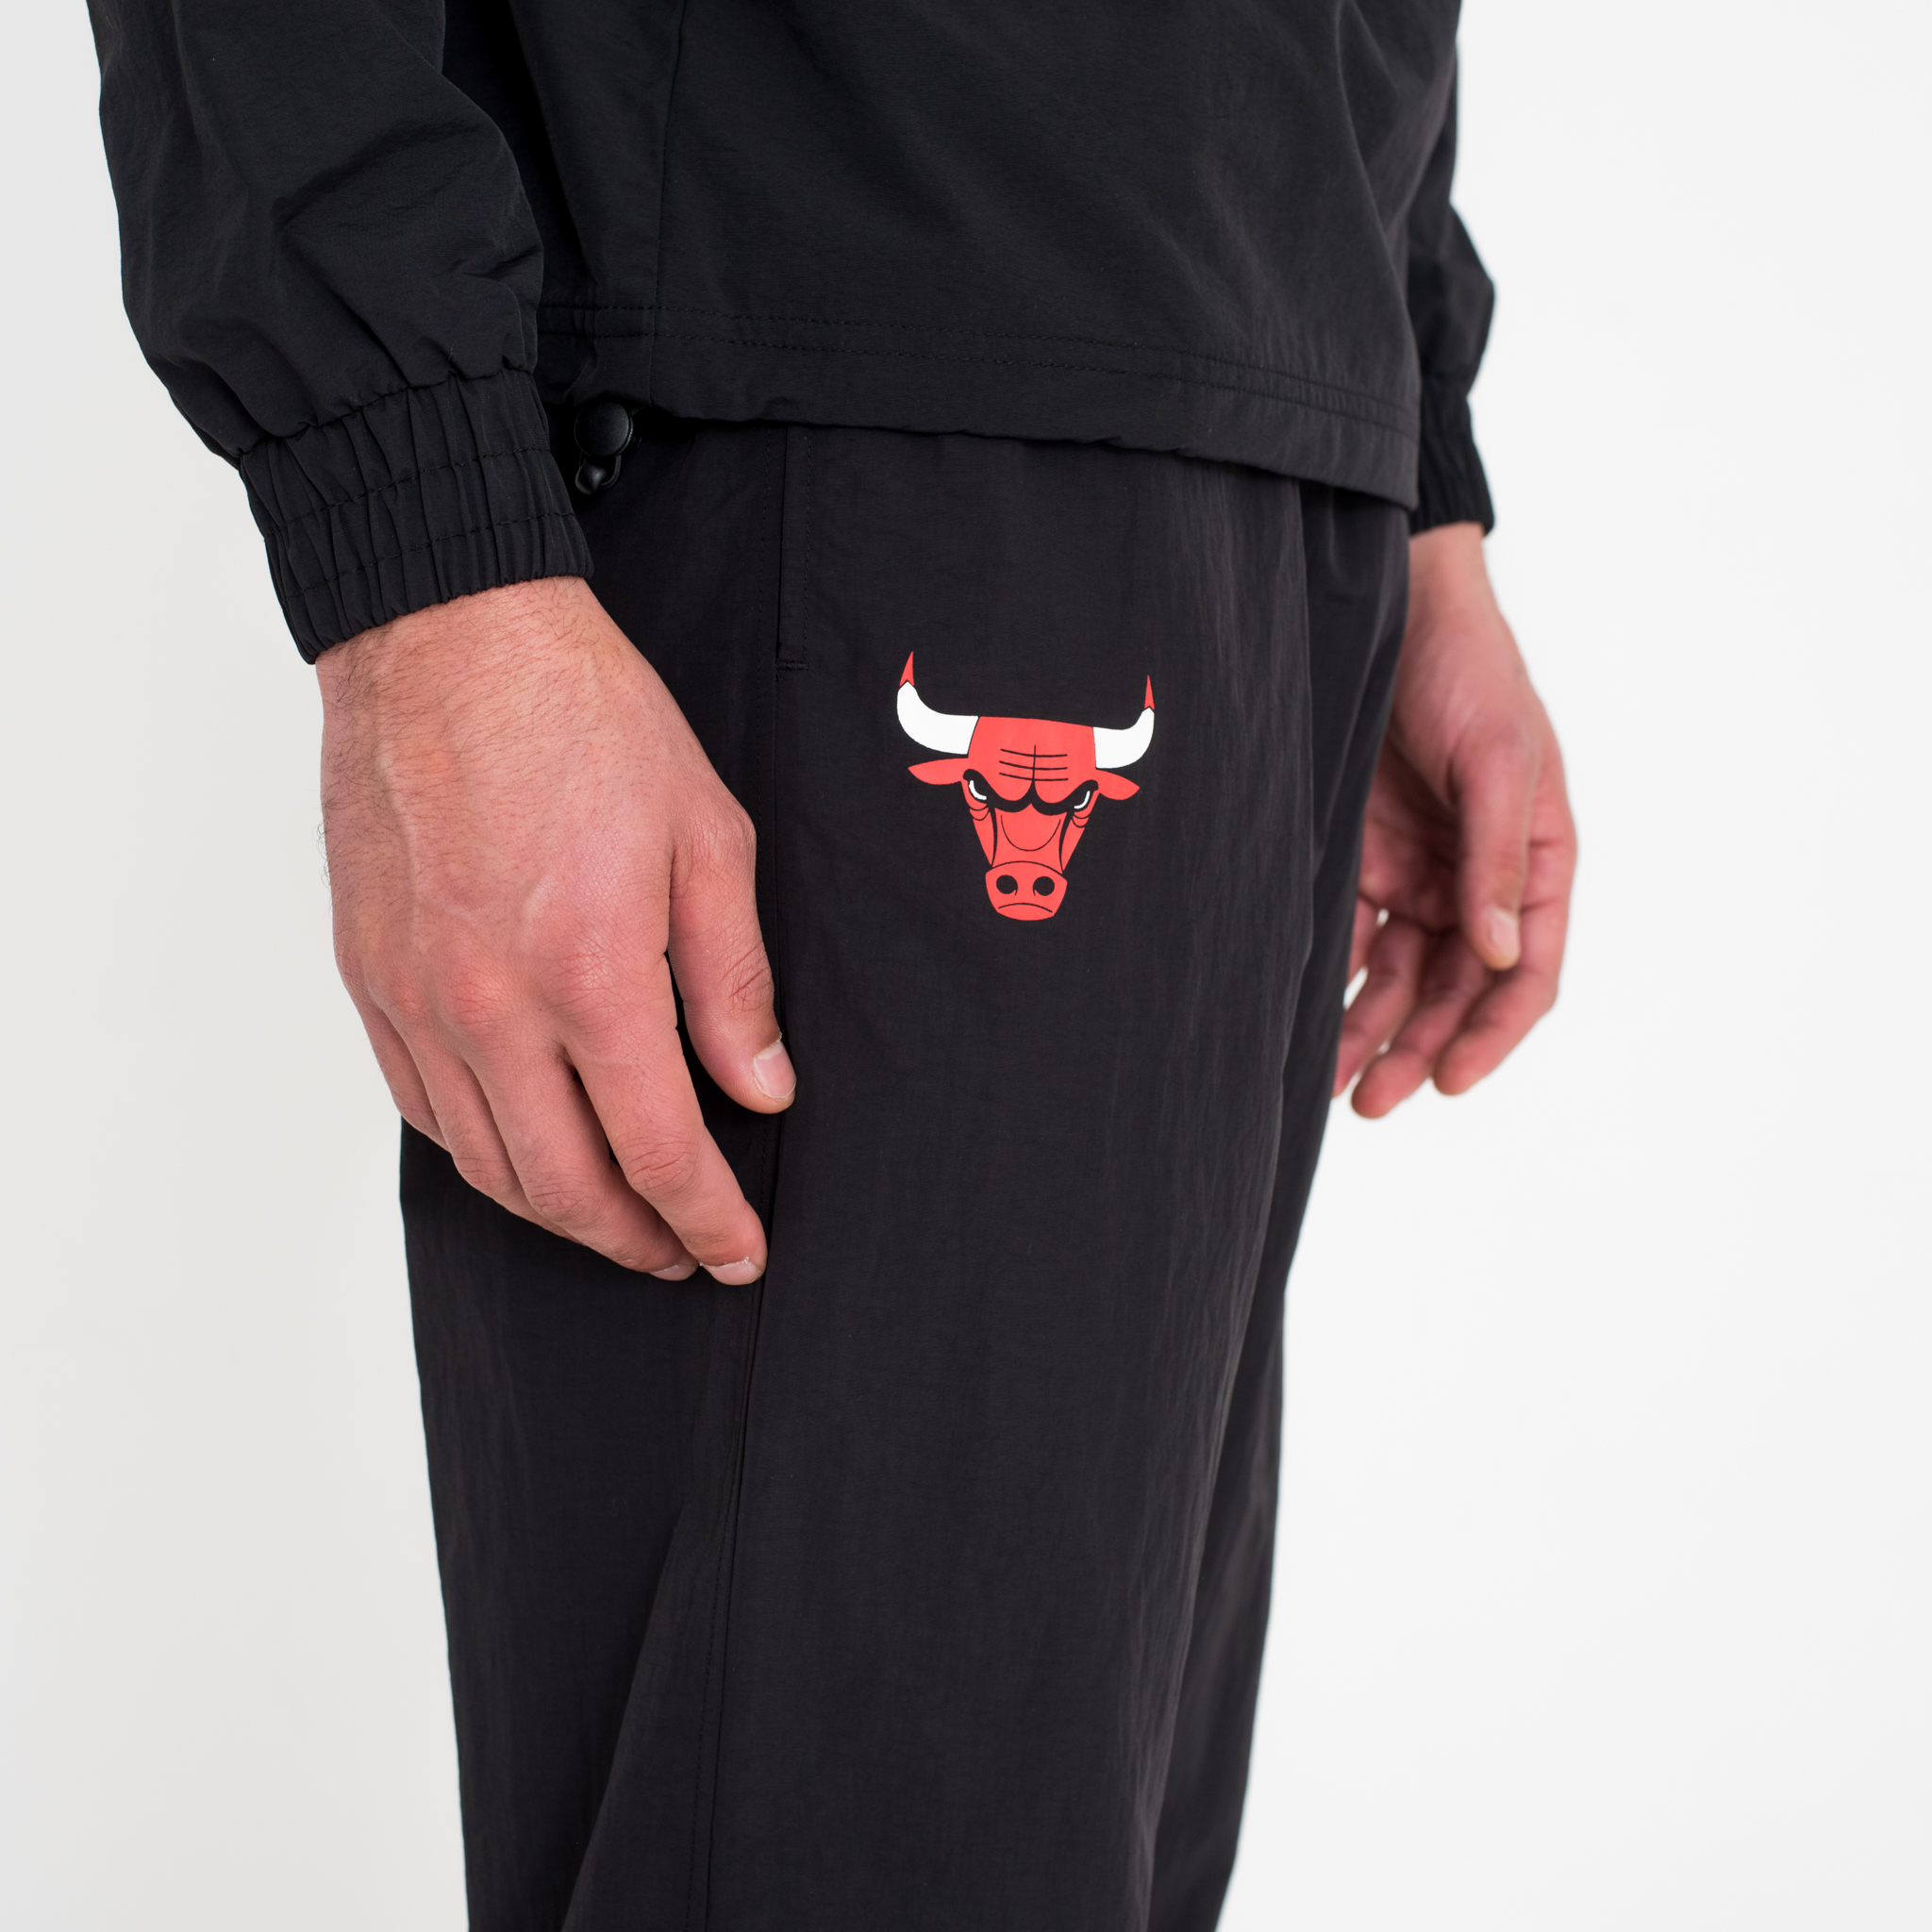 Pantaloni della tuta rossi dei Chicago Bulls